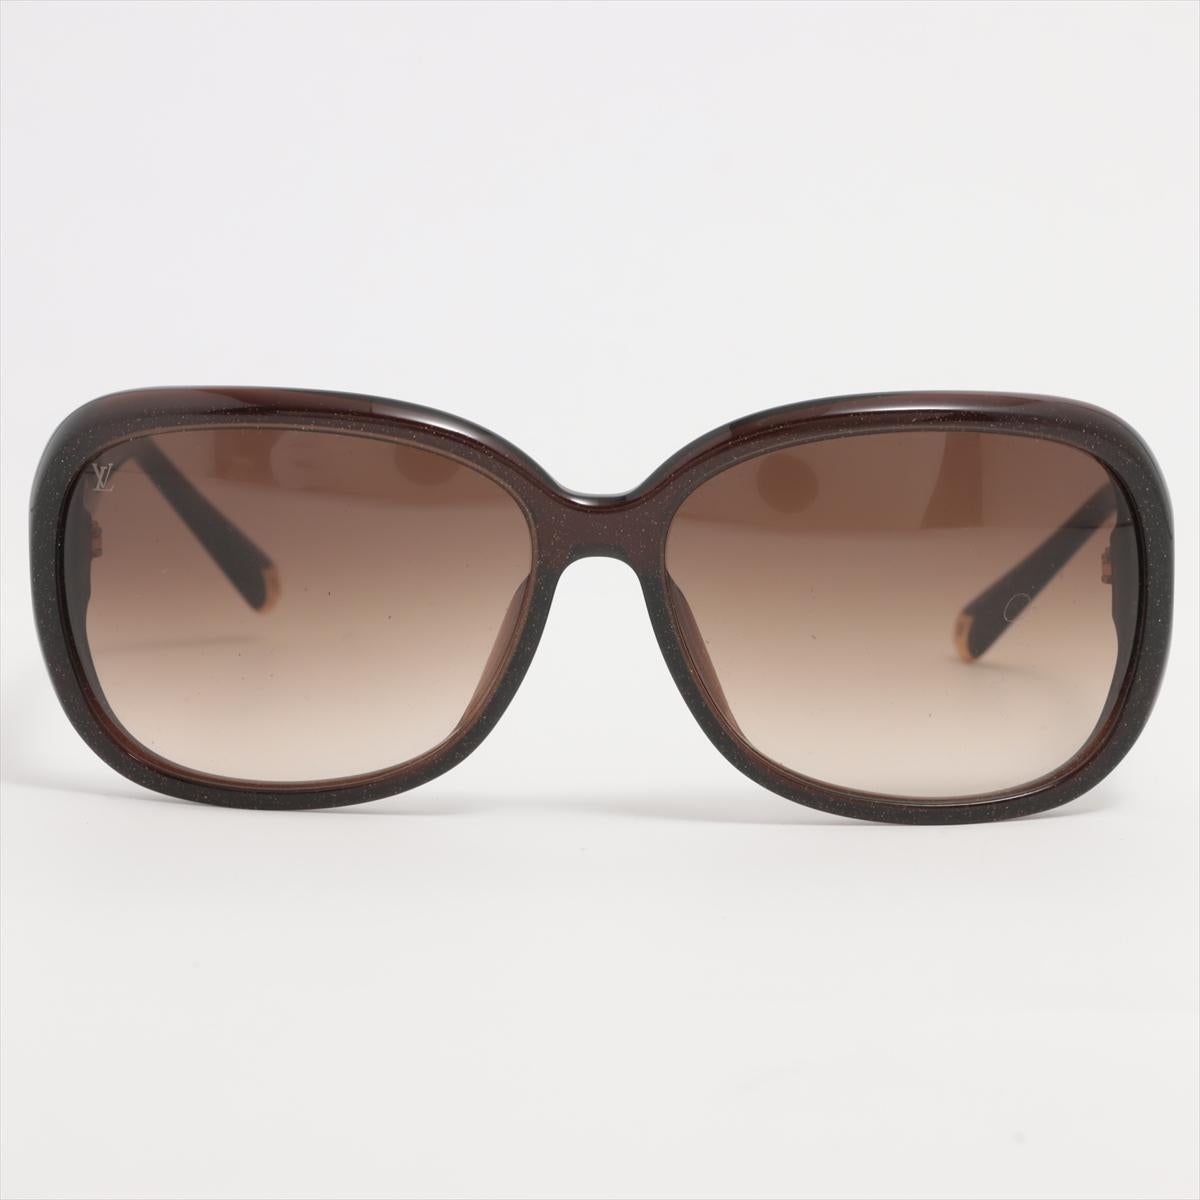 Die LV Obsession Round Sonnenbrille ist eine neue Version des Bestsellers, die mit einem funkelnden Finish neu erfunden wurde. Die übergroßen Gläser haben einen Acetatrahmen mit Glitzereffekt, der durch leuchtende Hardware-Akzente noch verstärkt